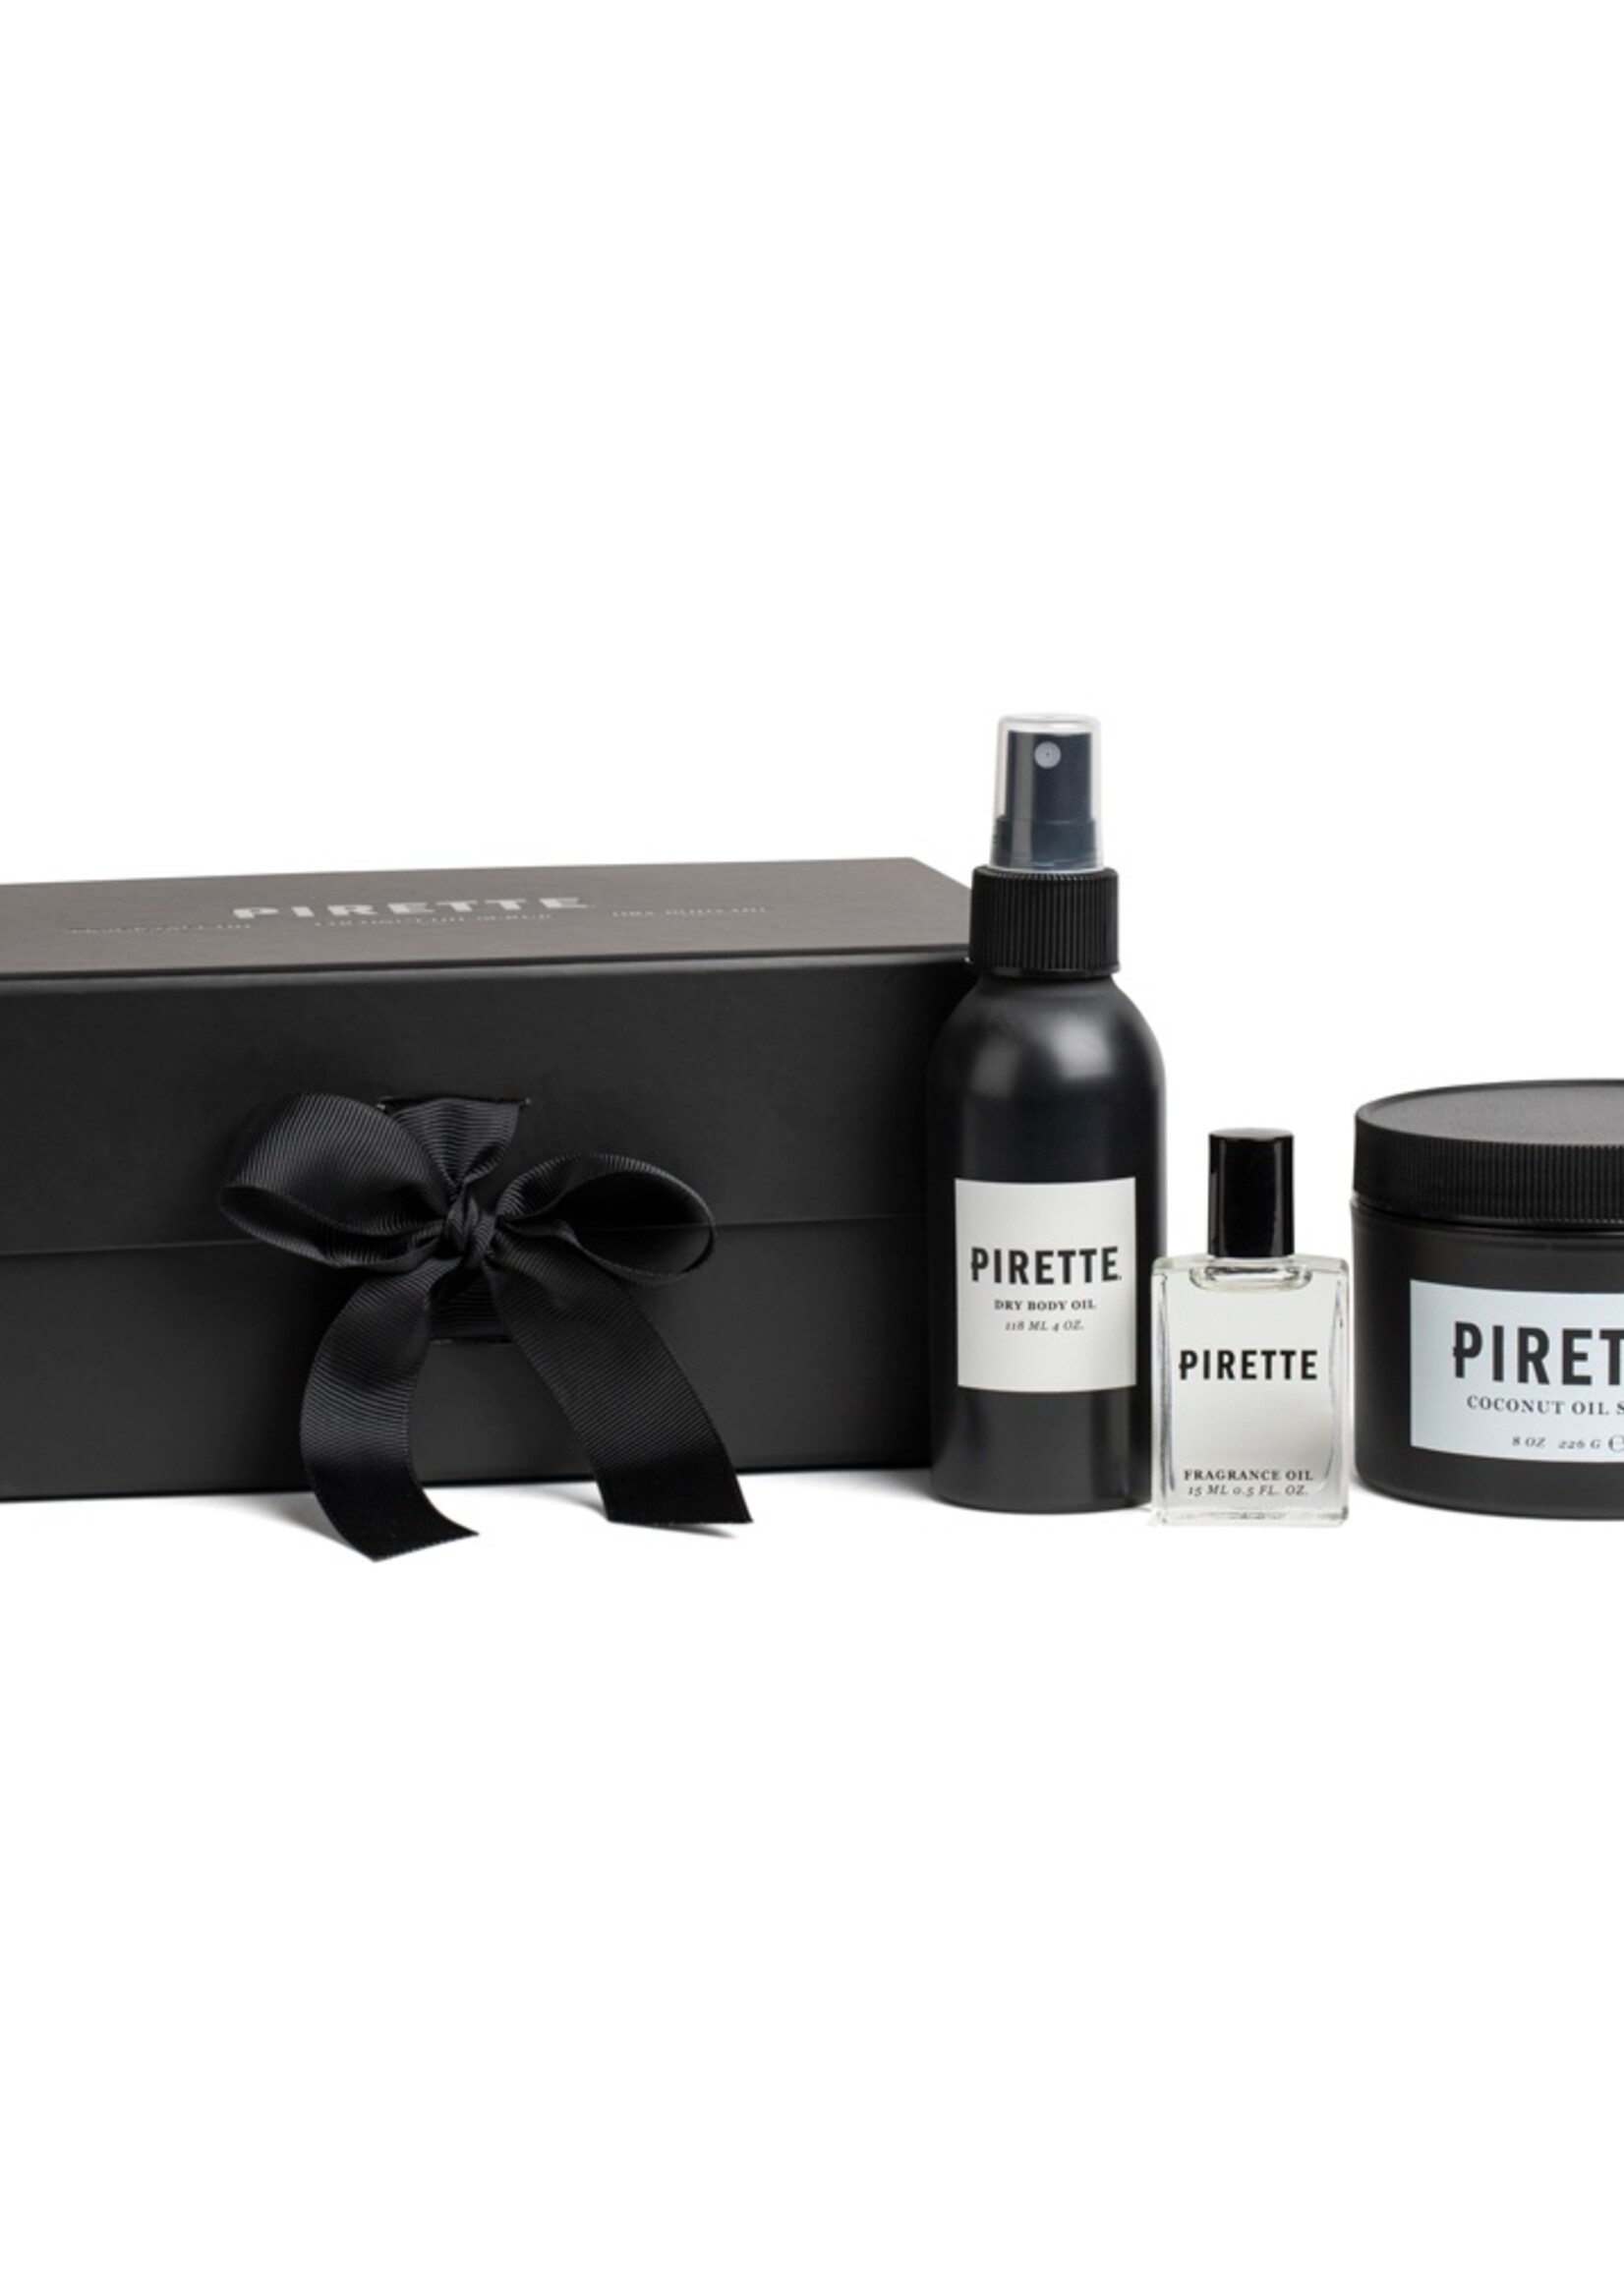 Pirette Gift Box